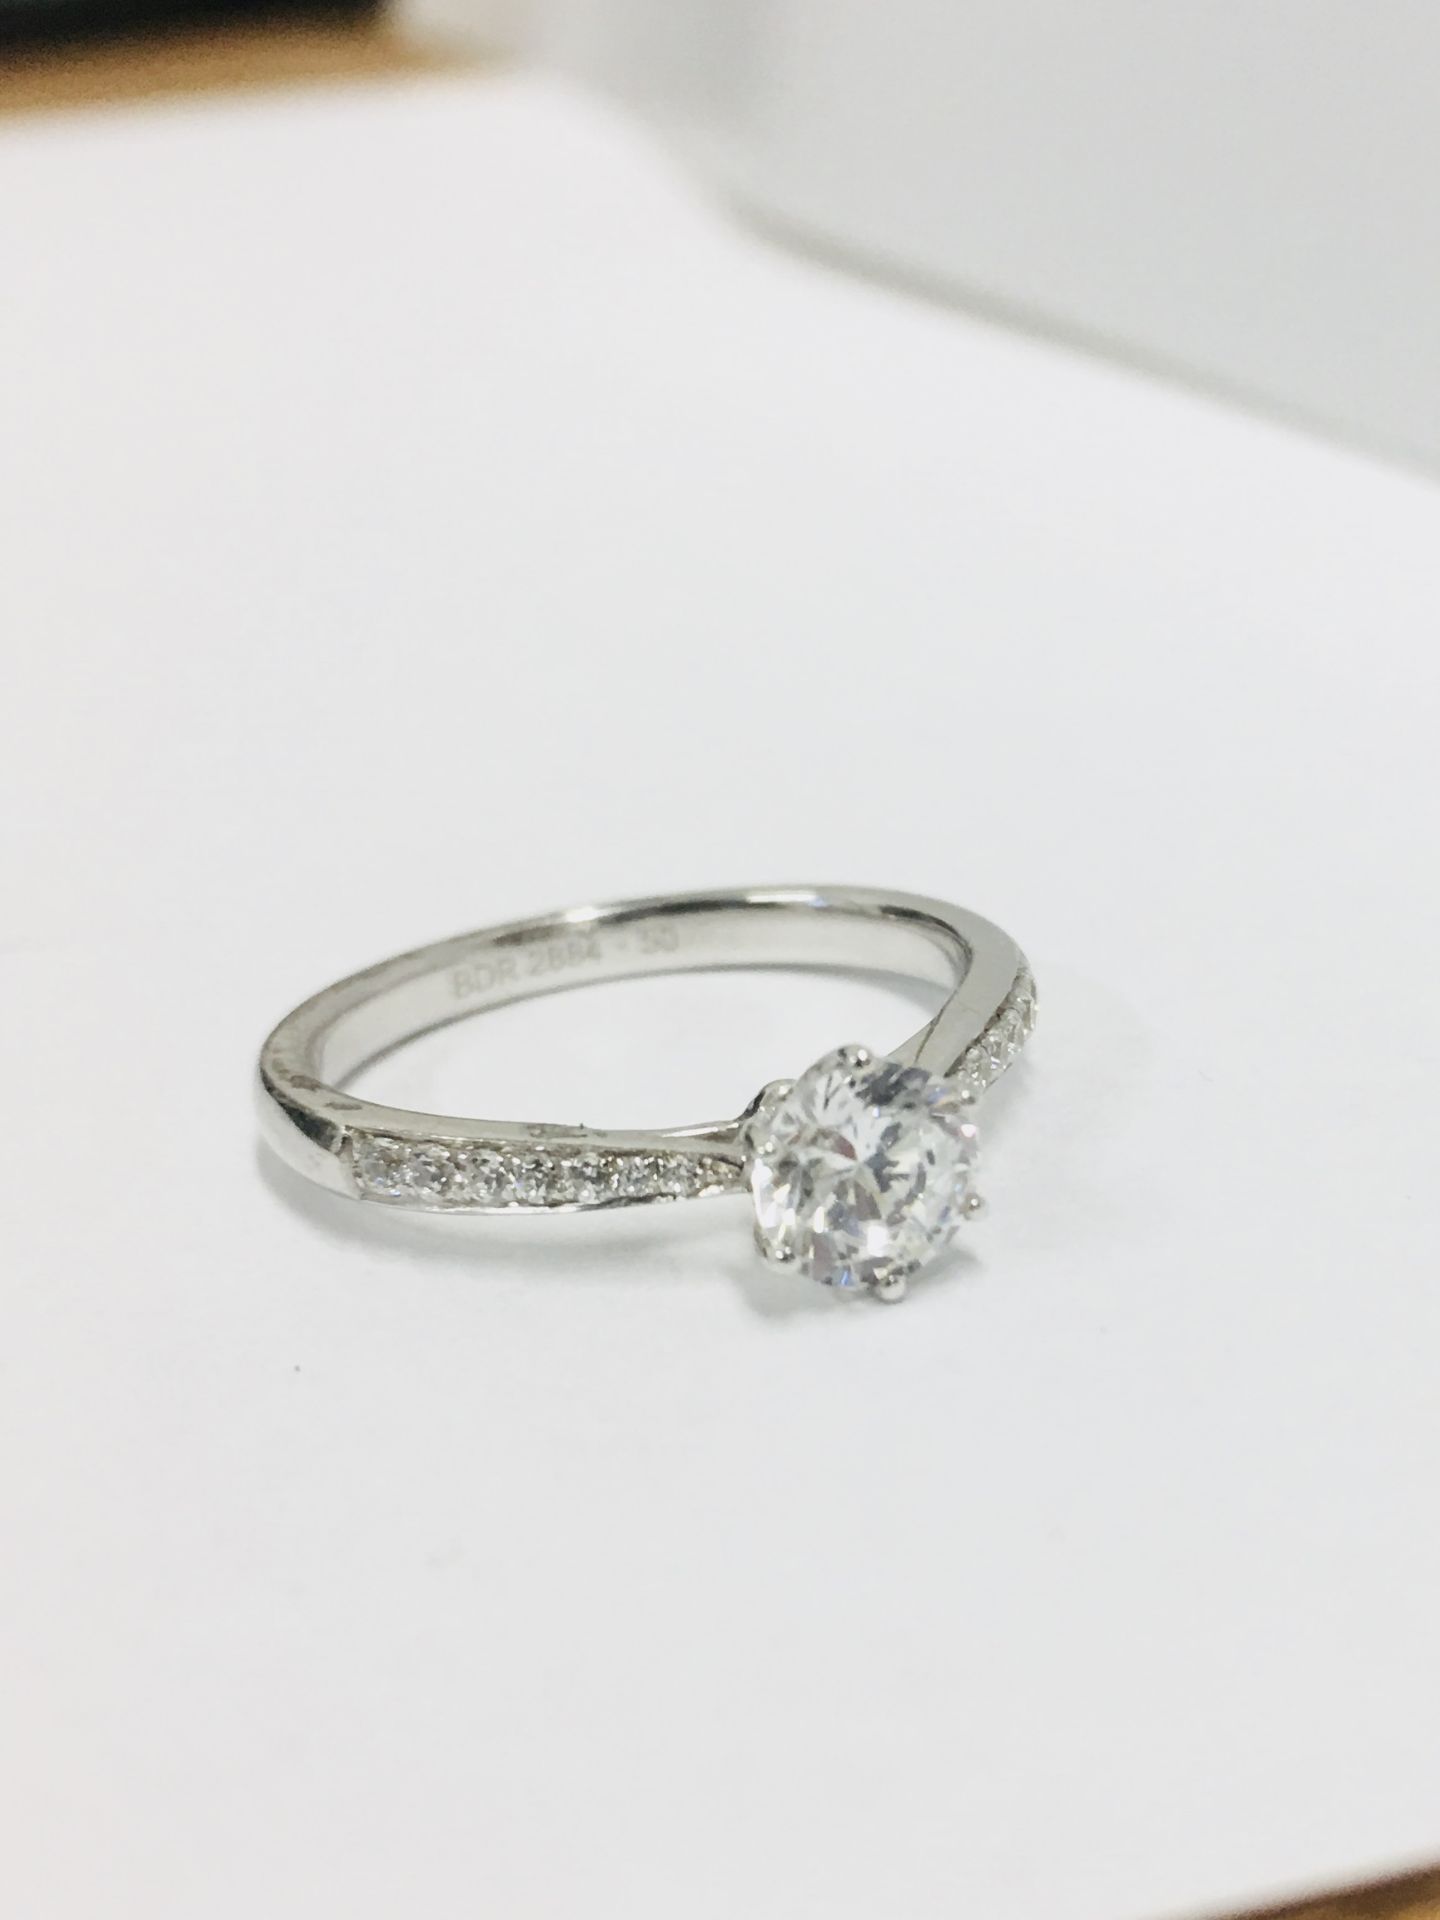 Platinum diamond solitaire ring,050ct brilliant cut diamond h colour vs clarity(clarity enhanced), - Bild 4 aus 4